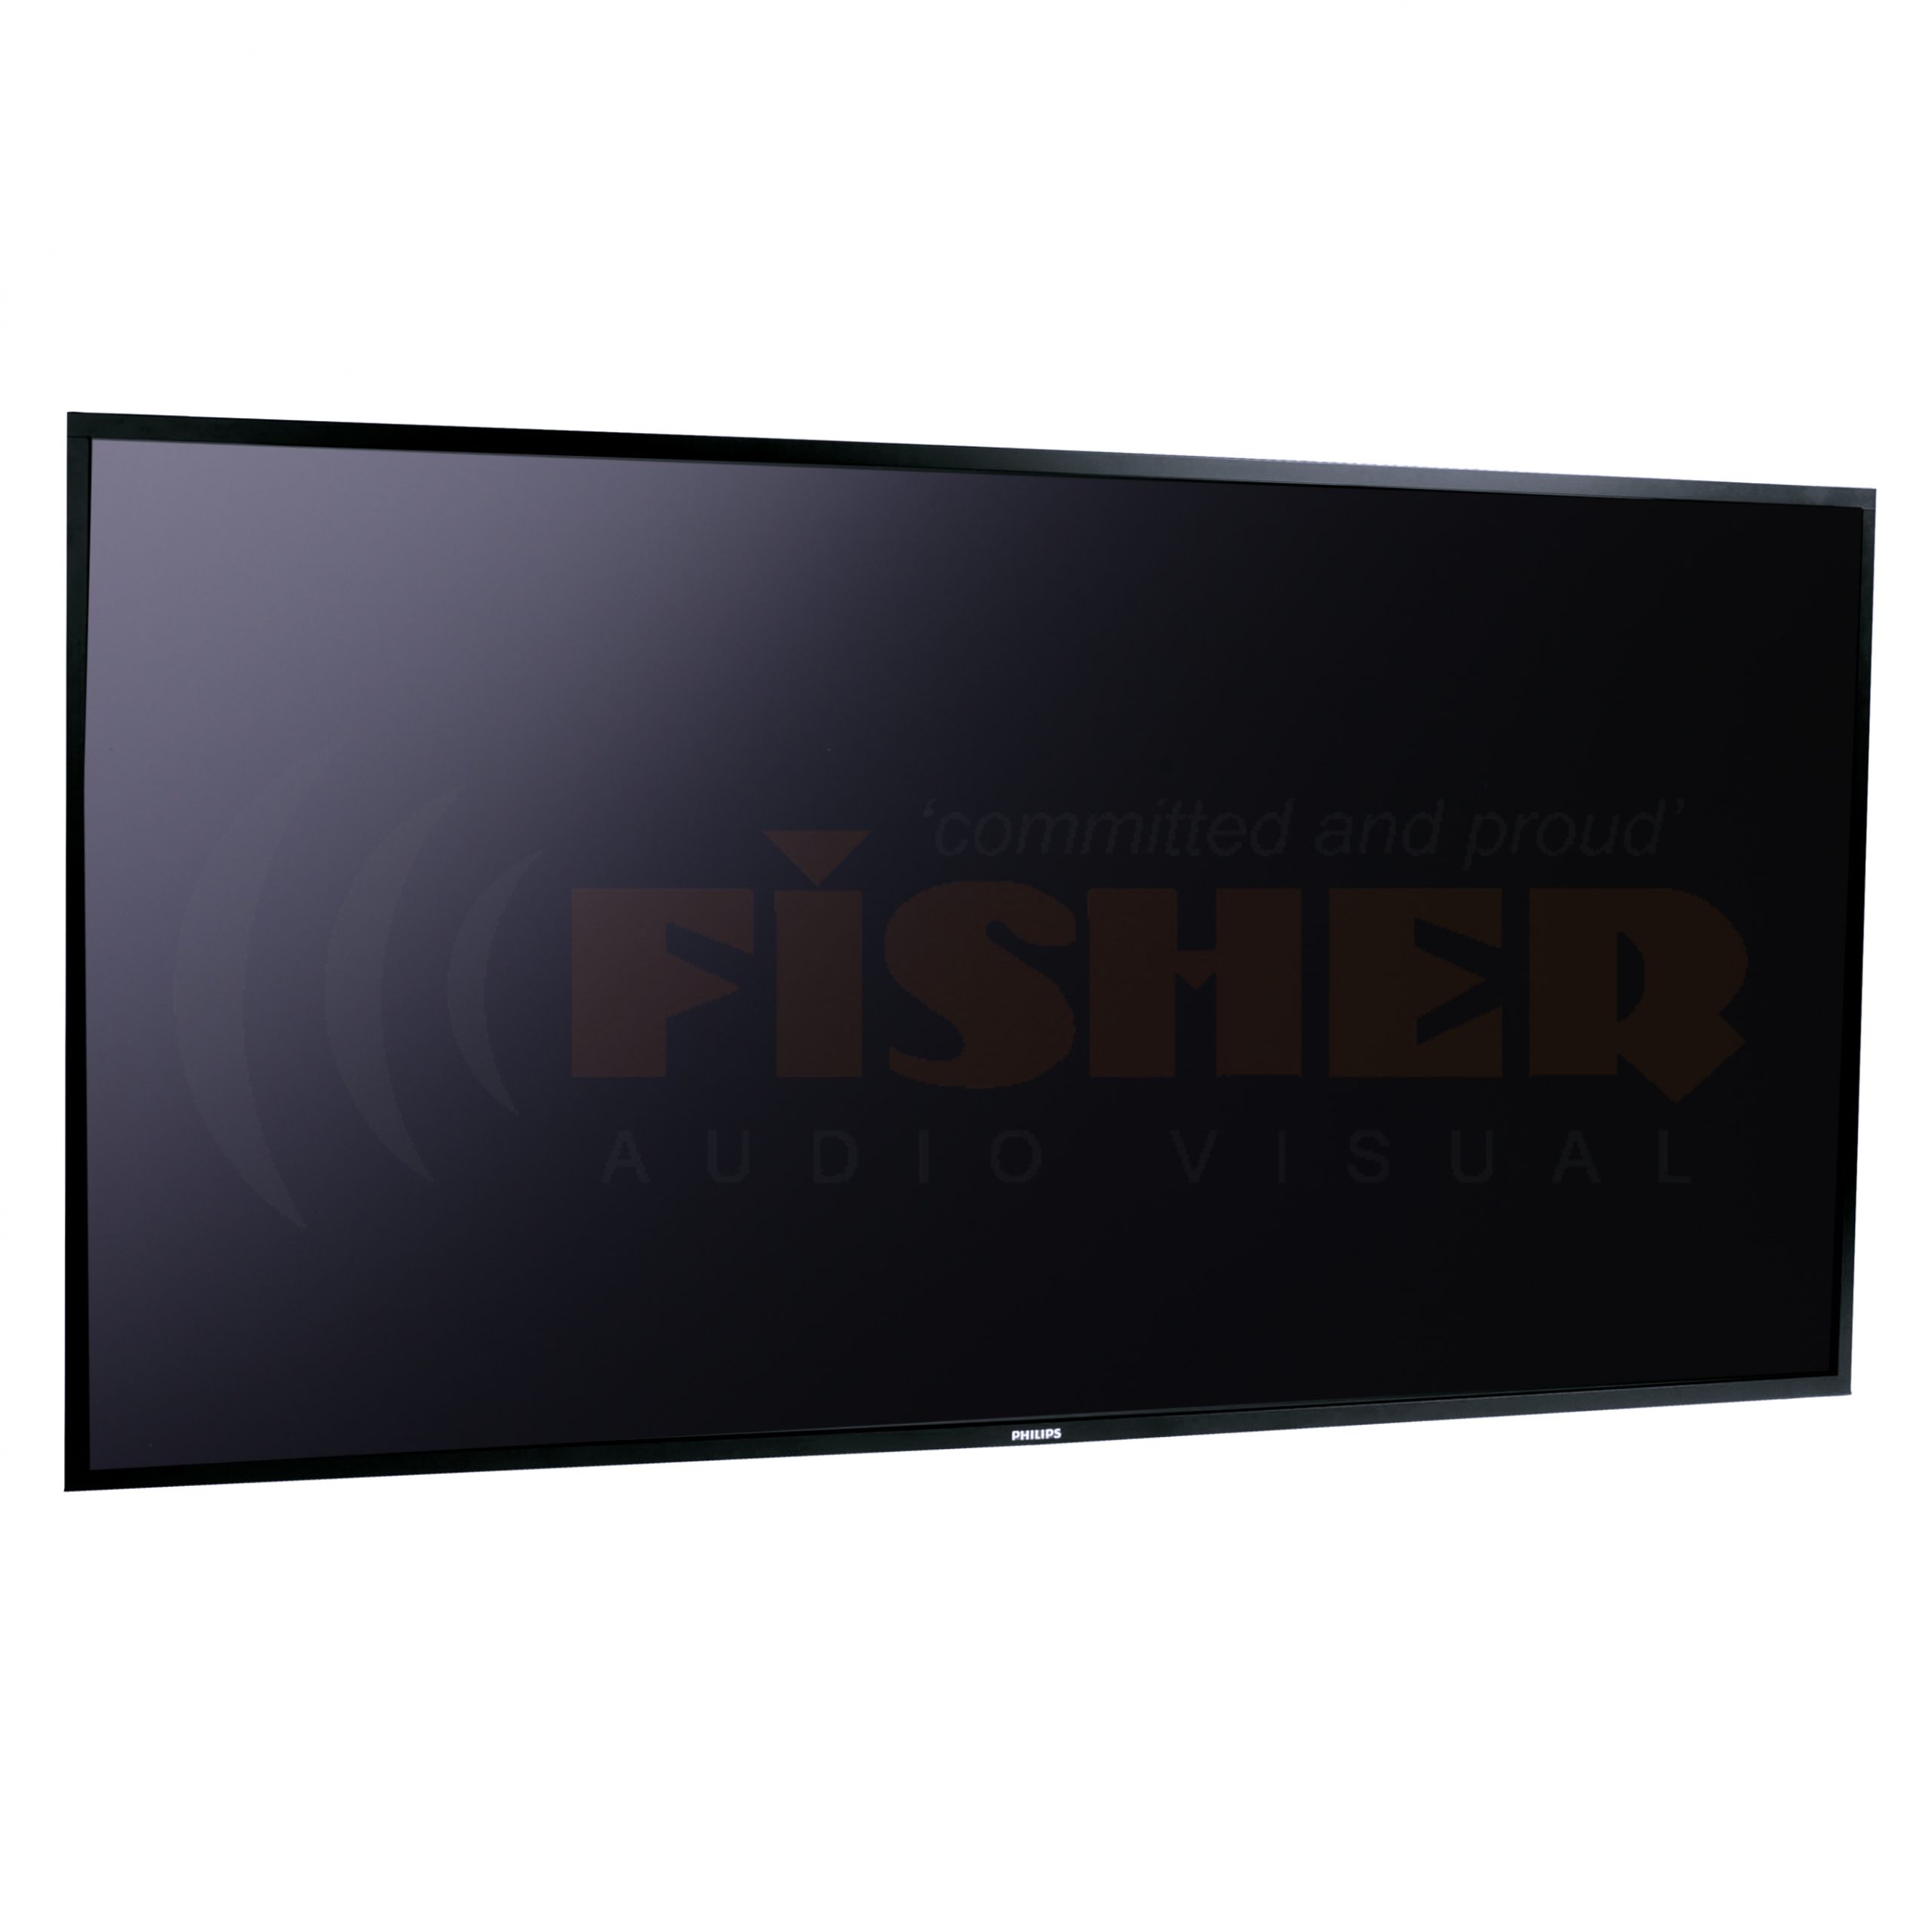 50" Panasonic HD Monitor - Fisher Audio Visual